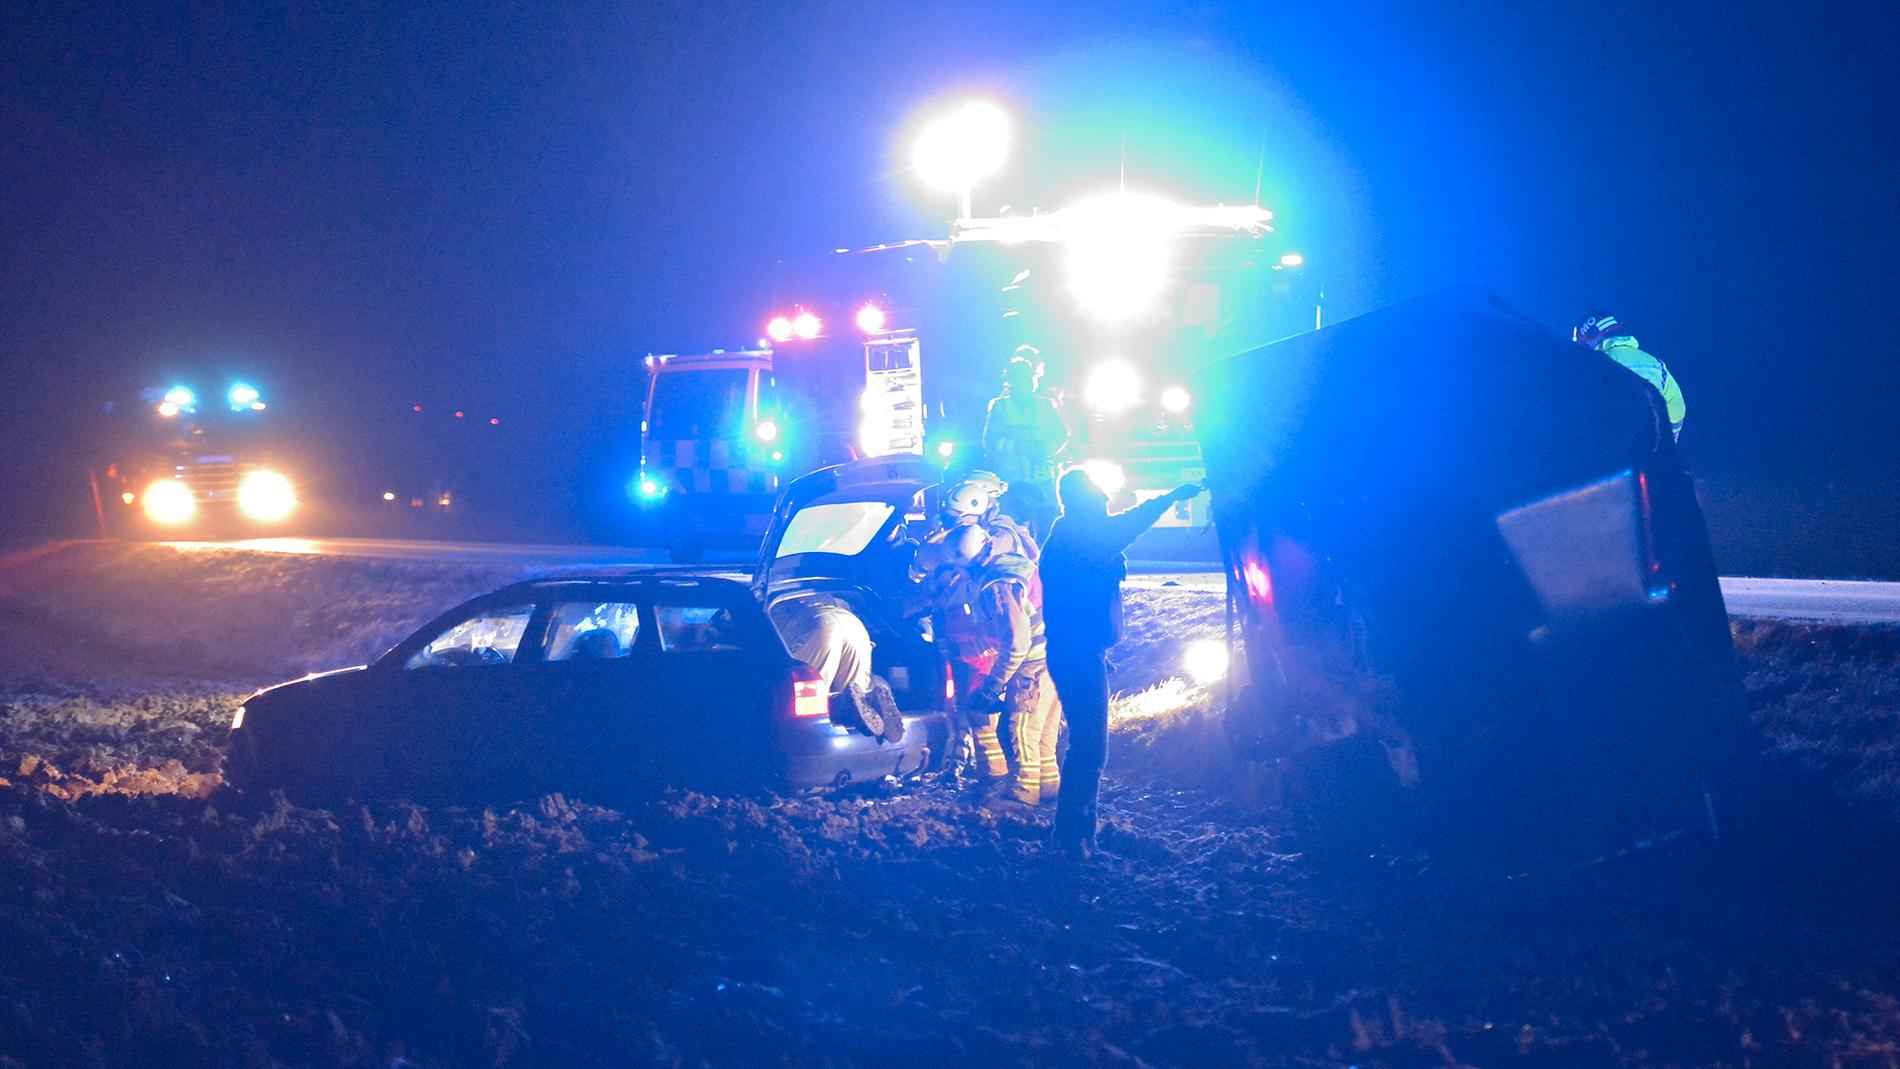 Räddningspersonal arbetar med en bil med hästsläp sedan den blåst av väg 110 strax söder om skånska Asmundtorp på lördagskvällen. SMHI har utfärdat en klass 2 varning för stora delar av södra Sverige med anledning av stormen.